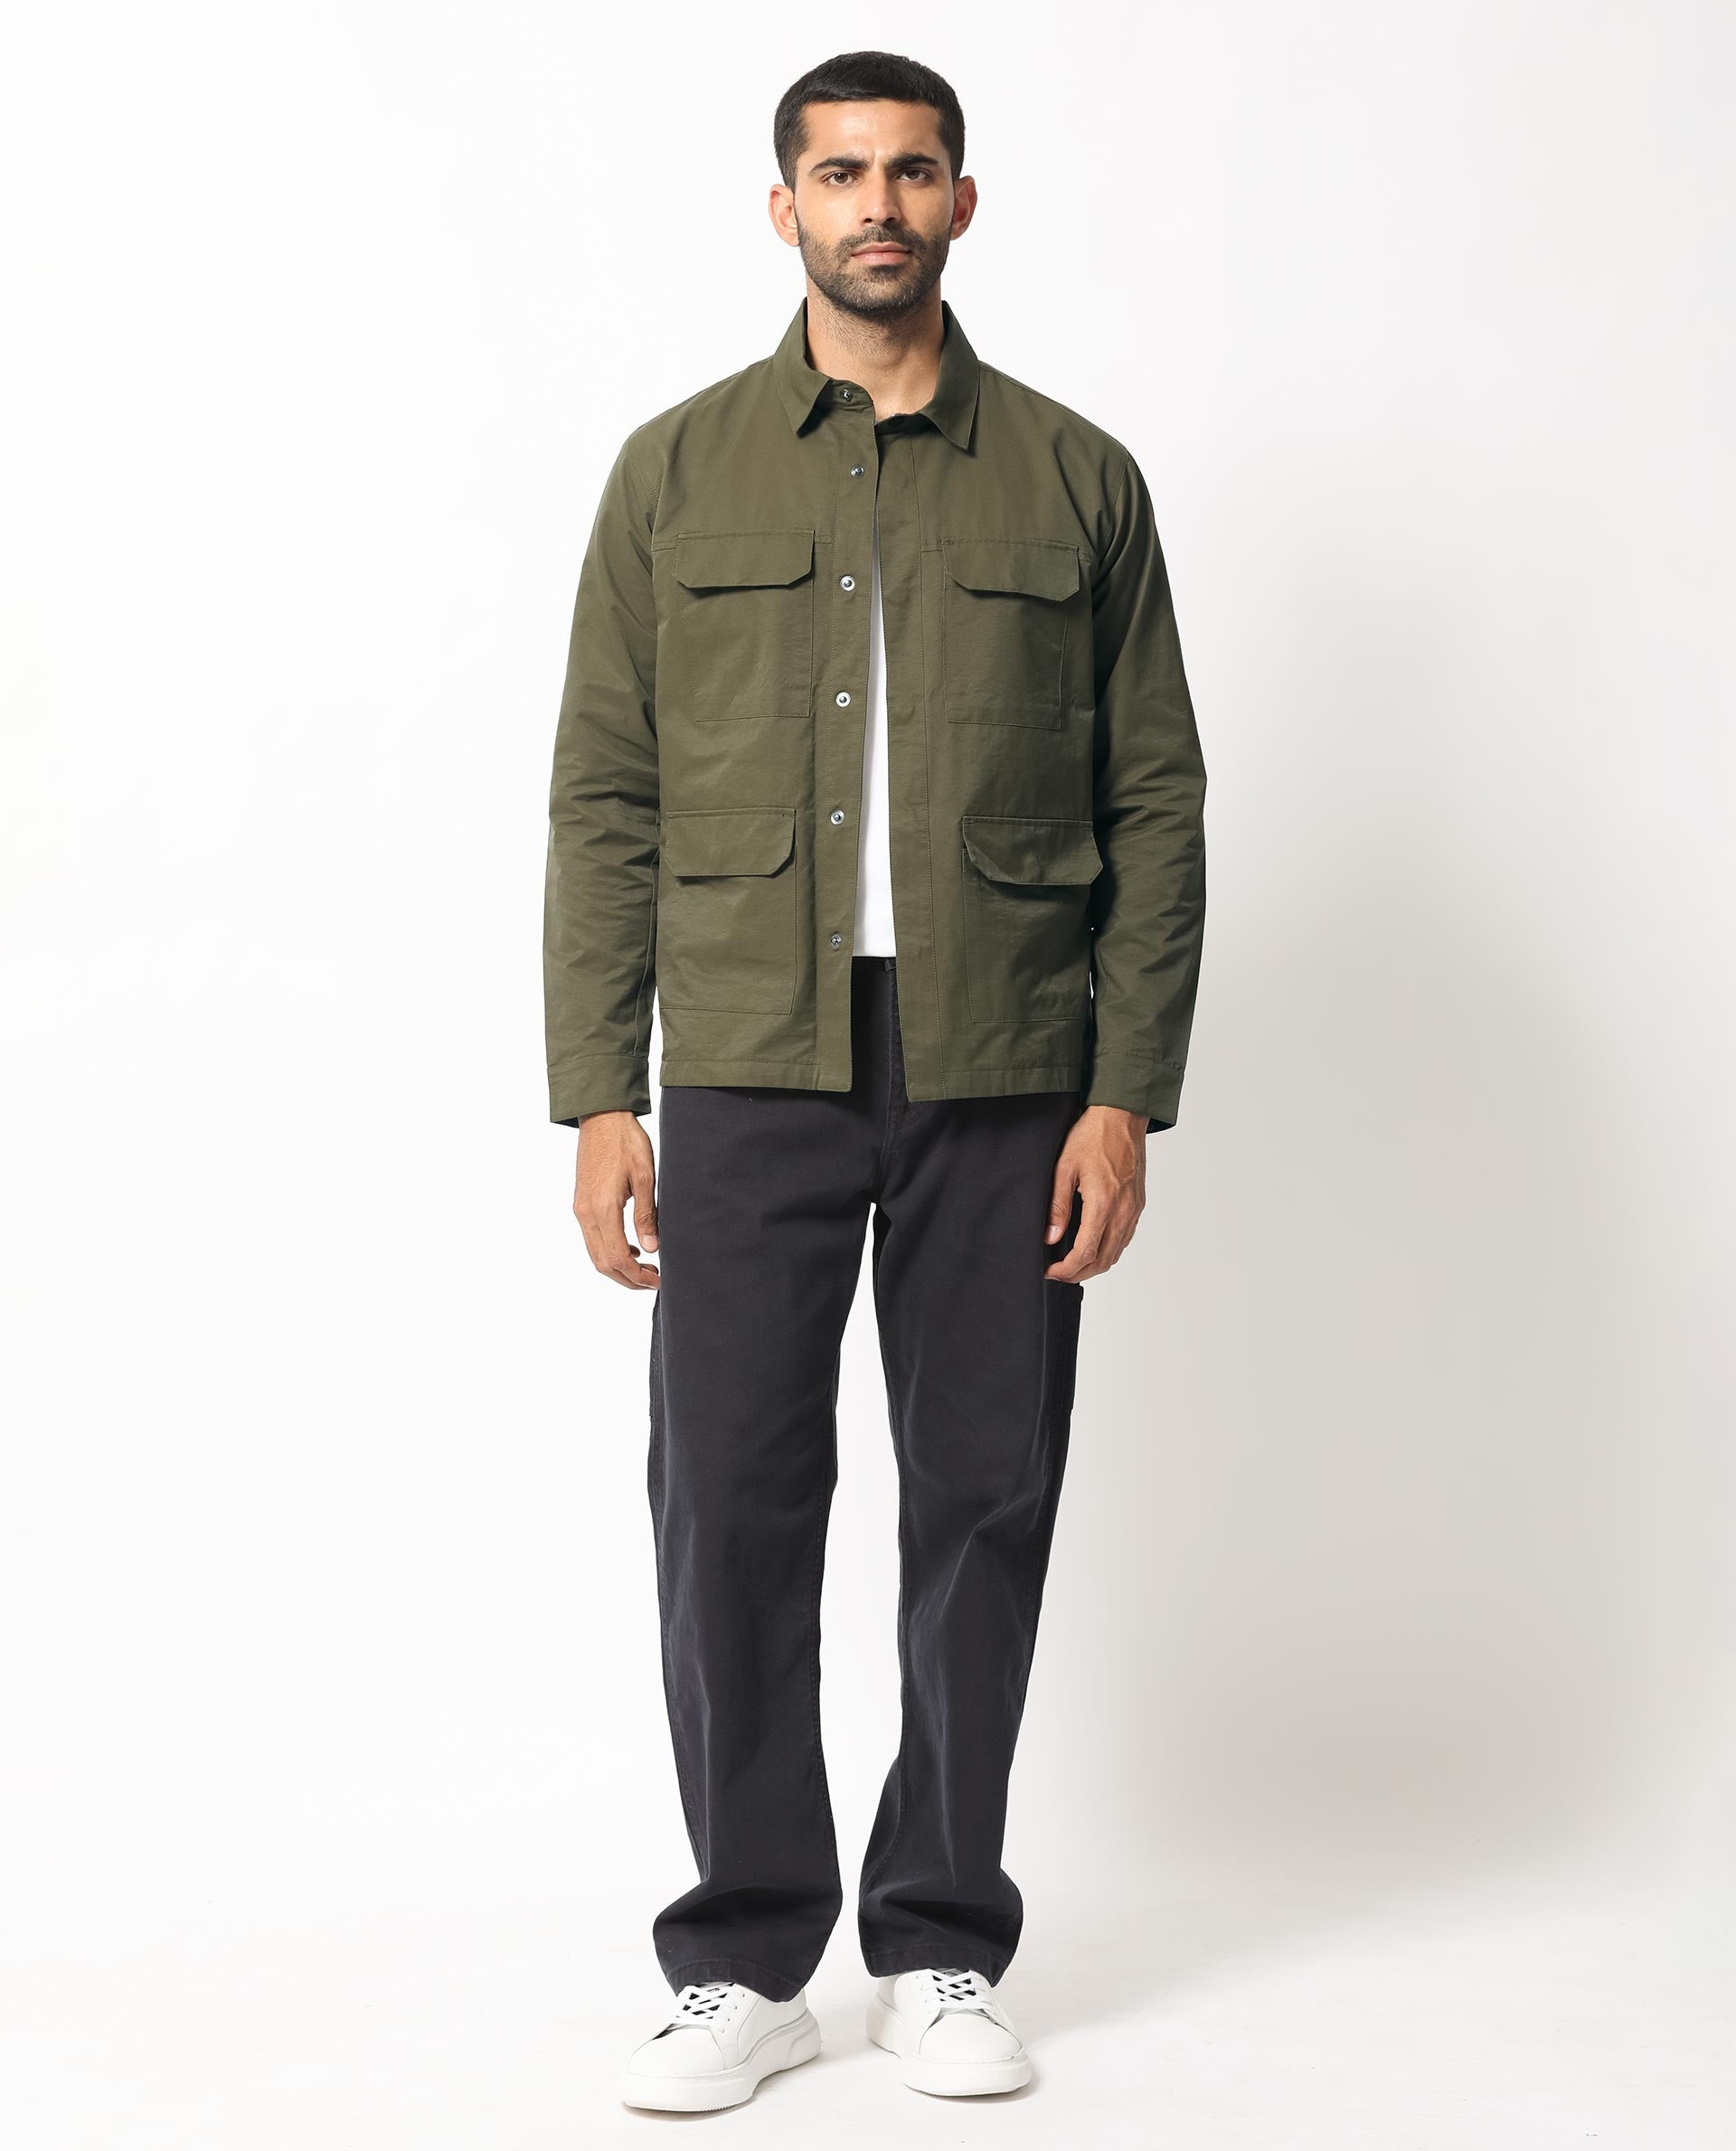 Multi Pocket Jackets Men | Jackets Coats Streetwear | Multi-pocket Men's  Coat - Men - Aliexpress